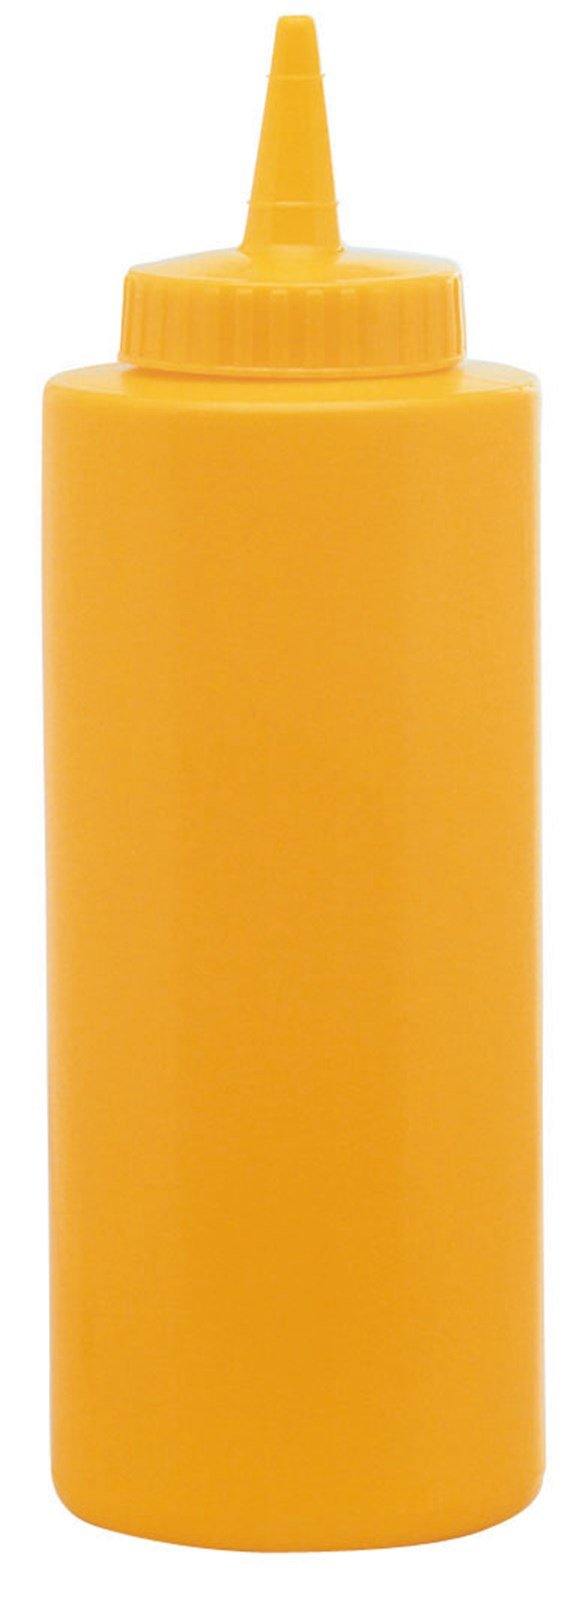 Saucen-Dispenser gelb 236ml - MyLiving24